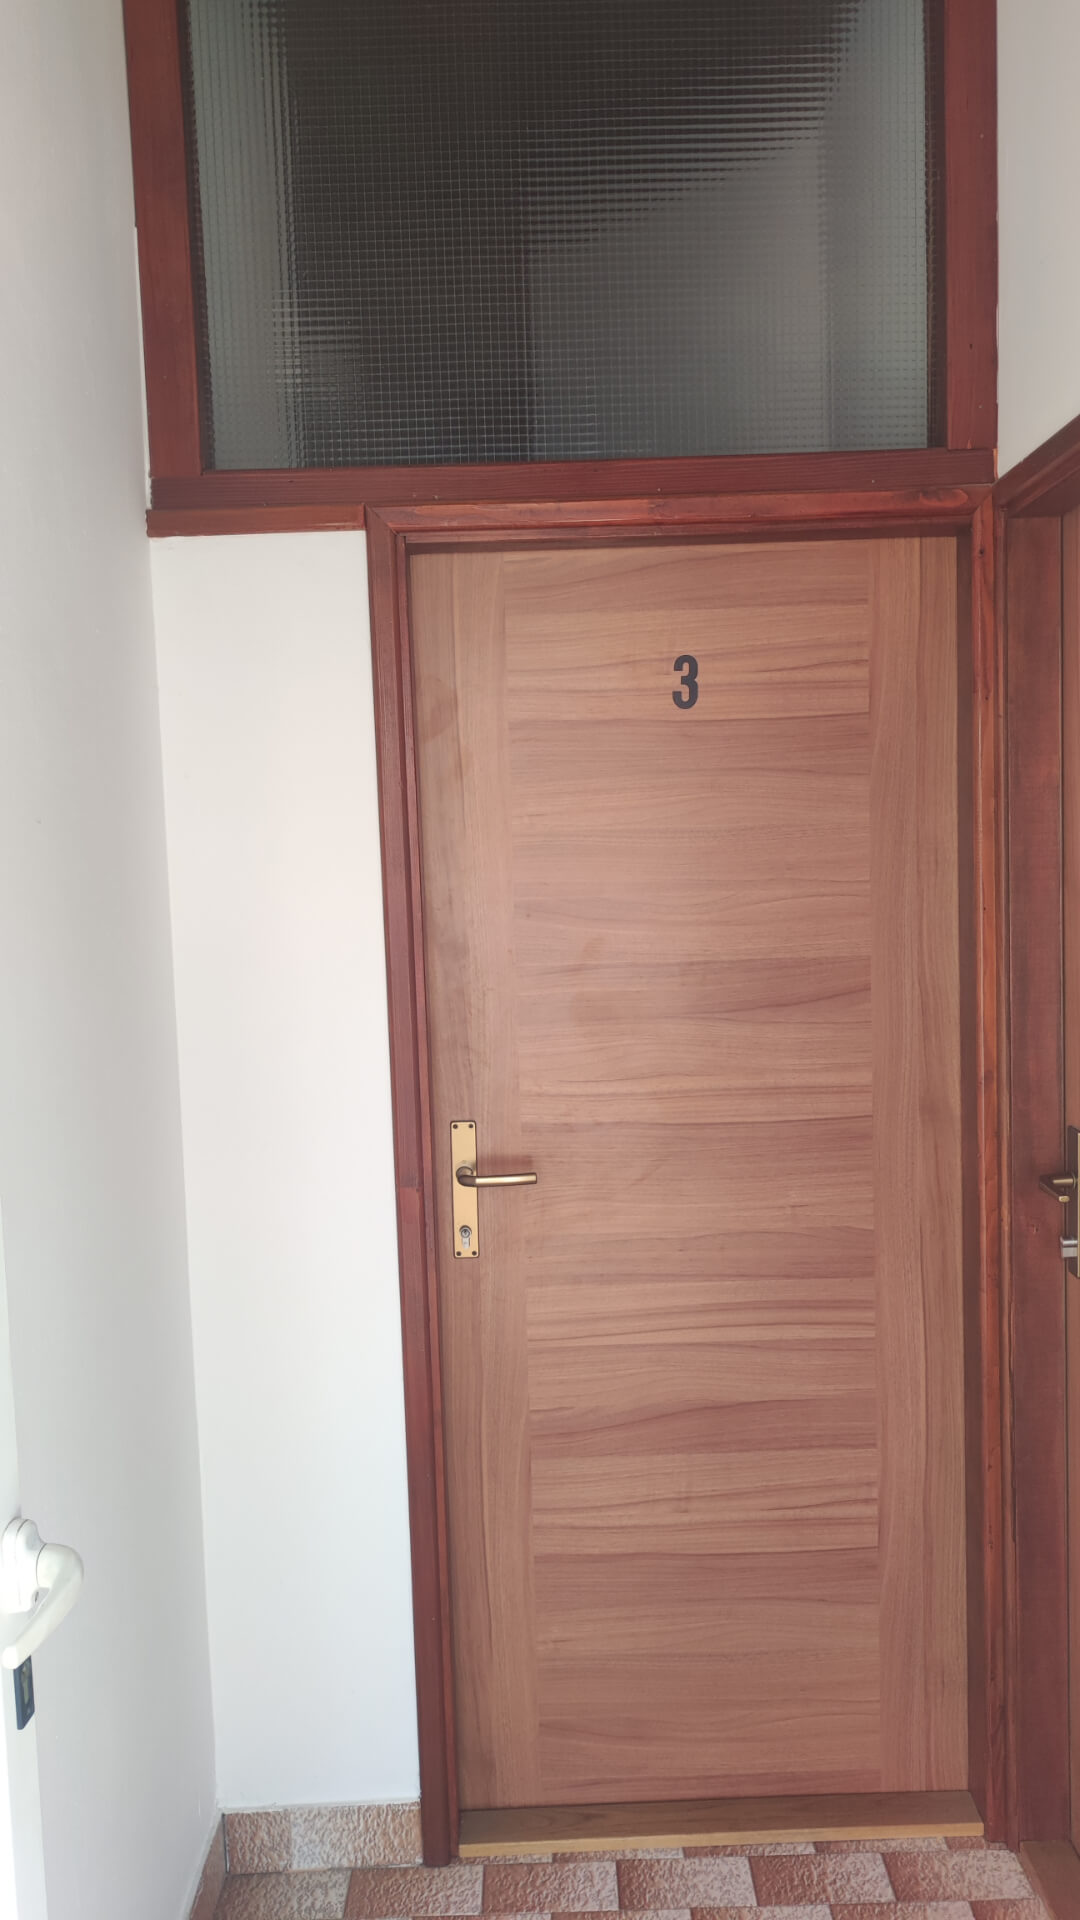 Apartment-3-entrance